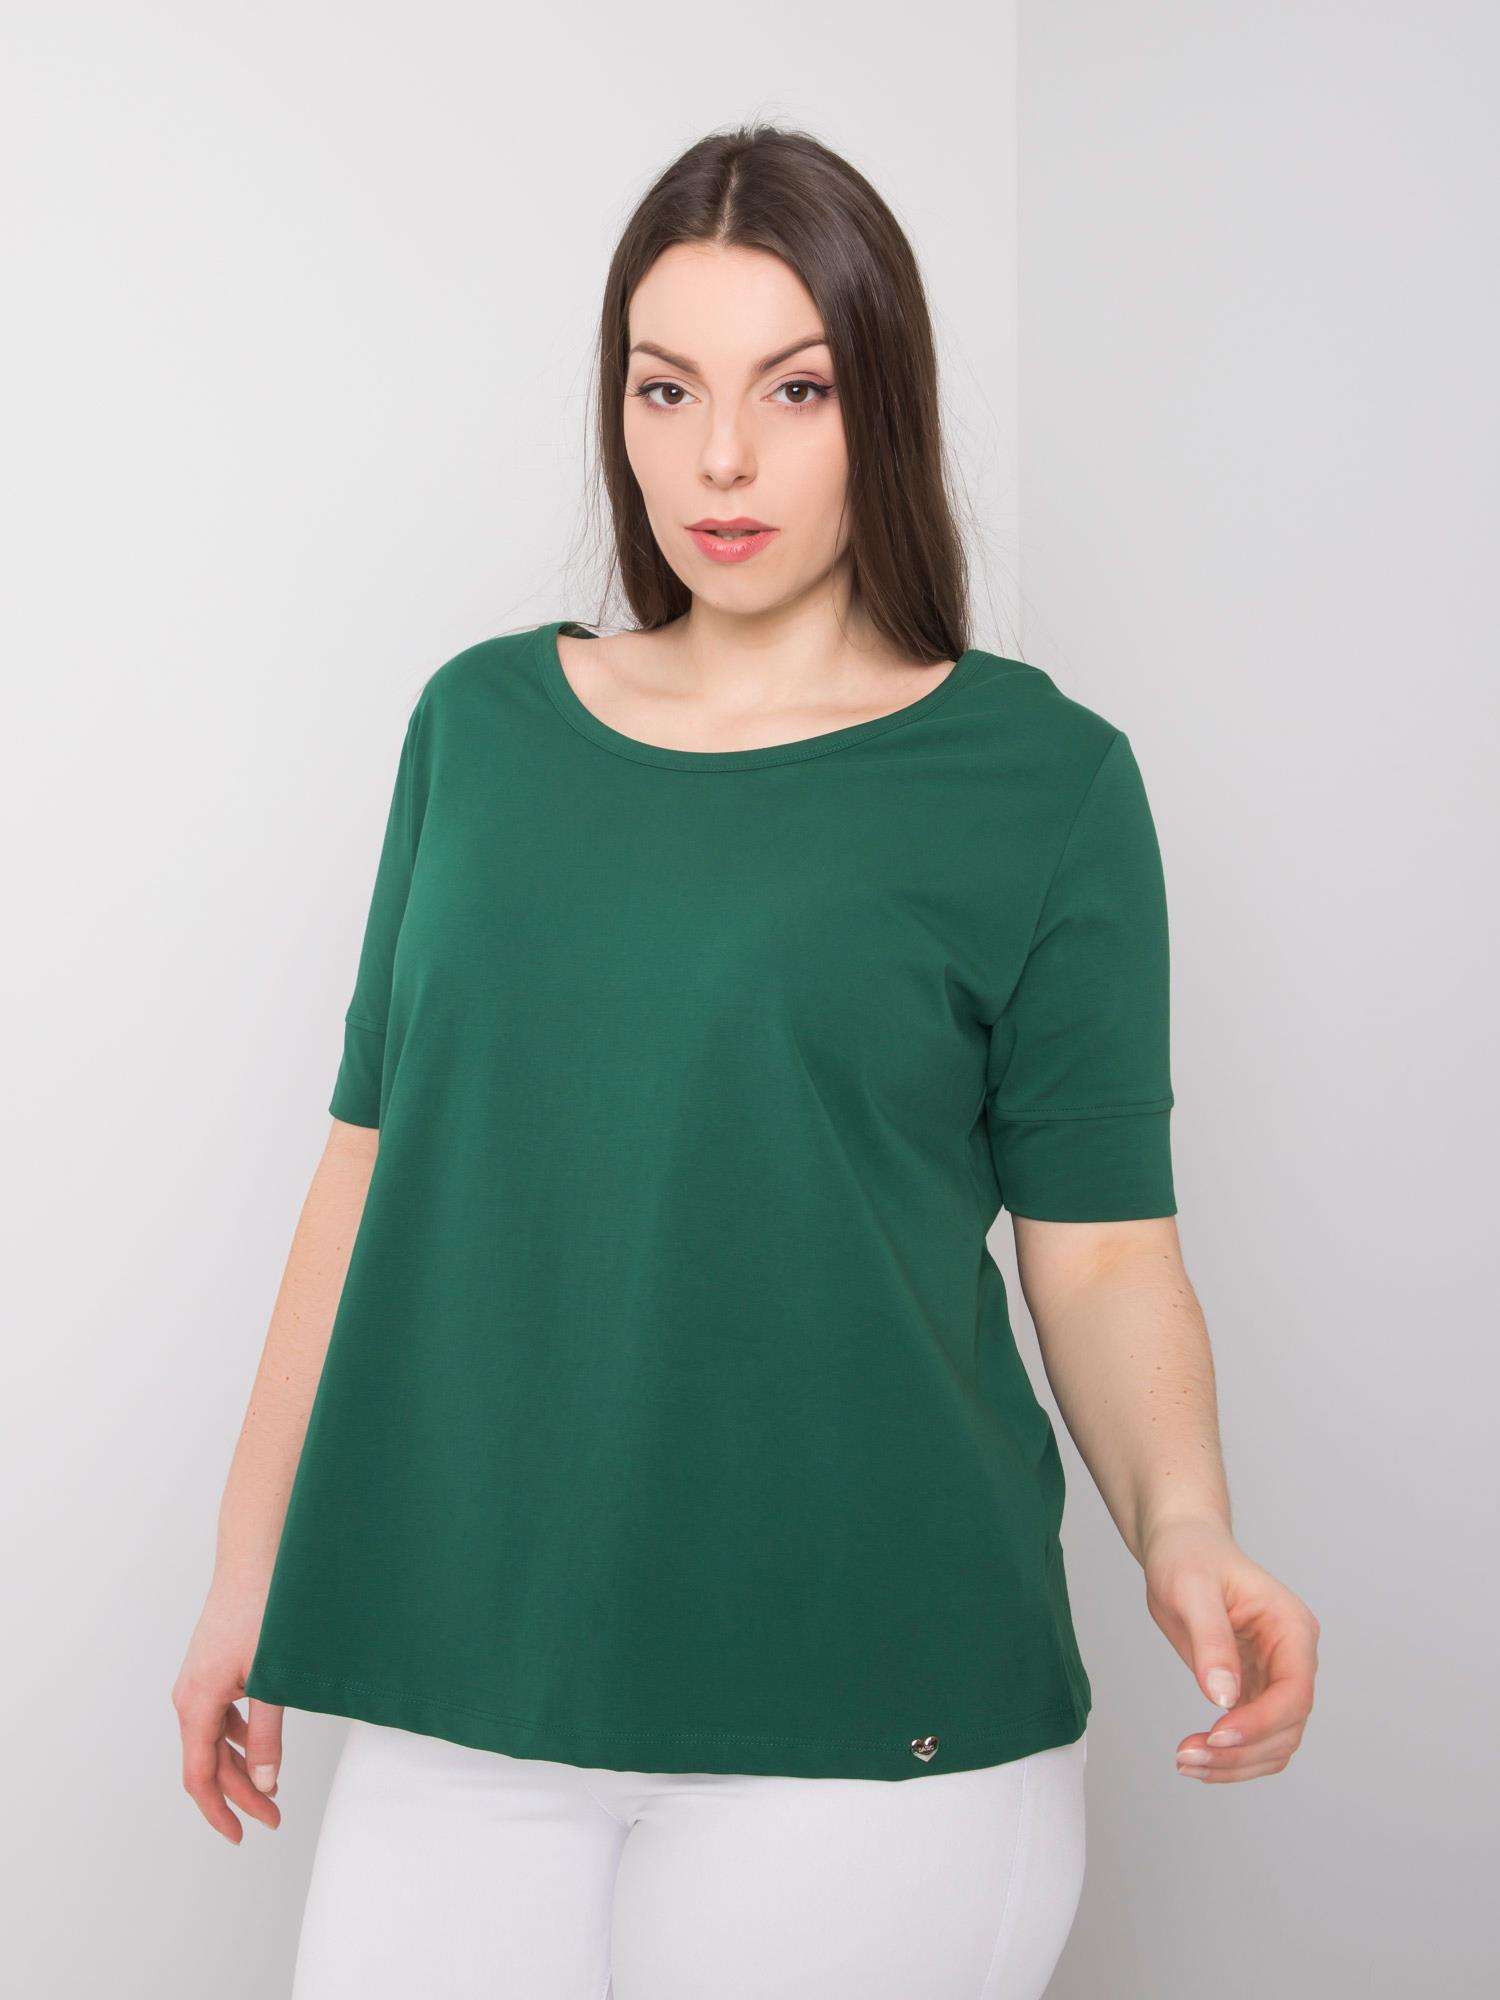 Levně Dámské bavlněné tričko tmavě zelené barvy ve větší velikosti